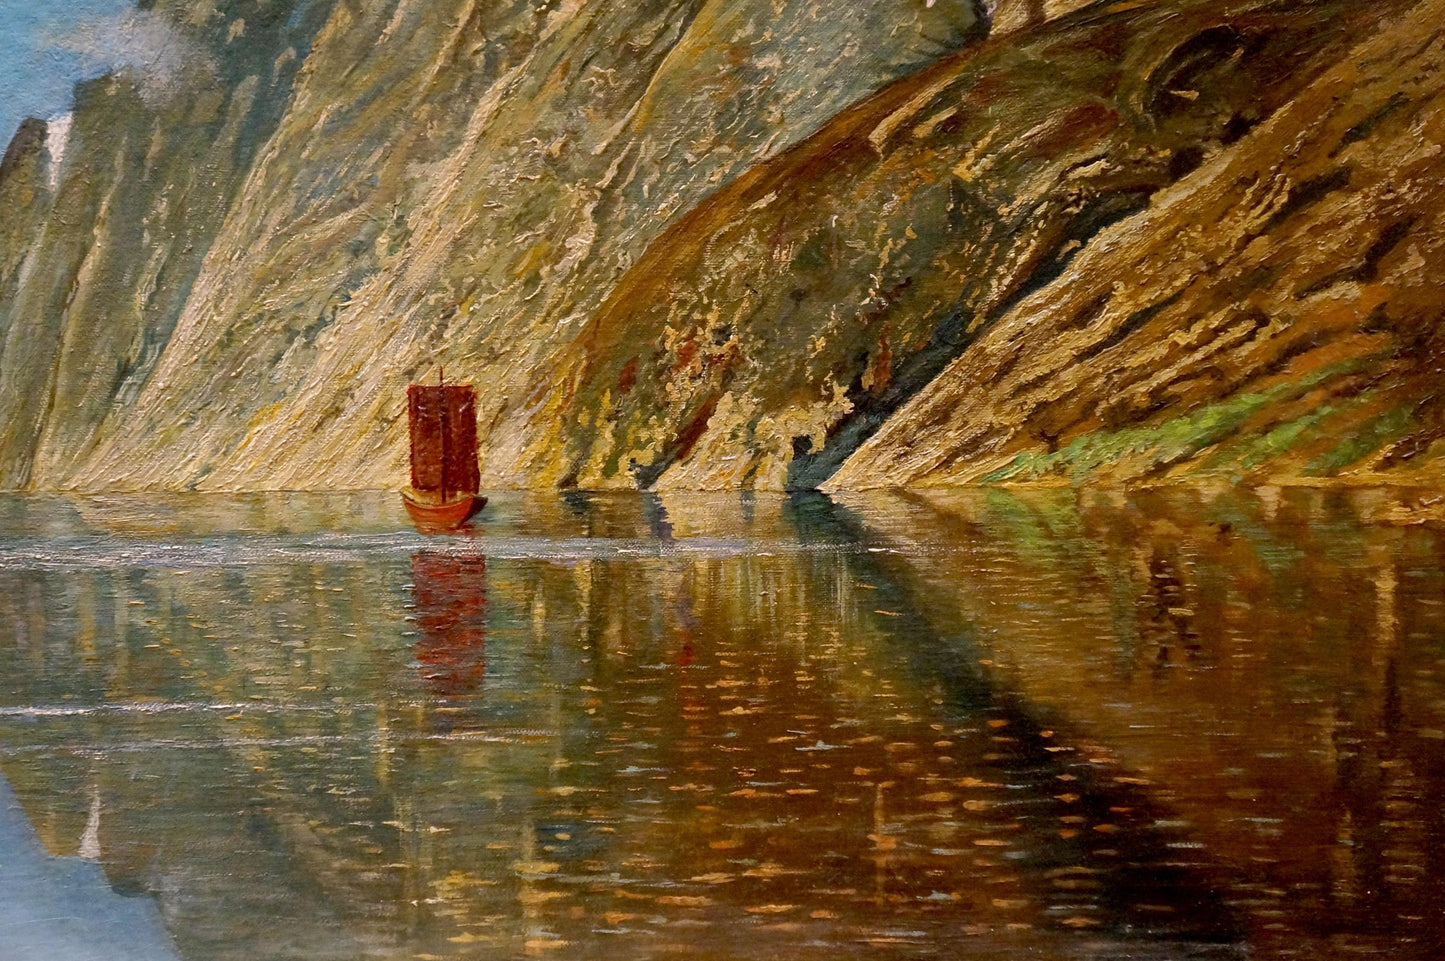 The European artist's oil painting showcases a river flowing through mountainous terrain